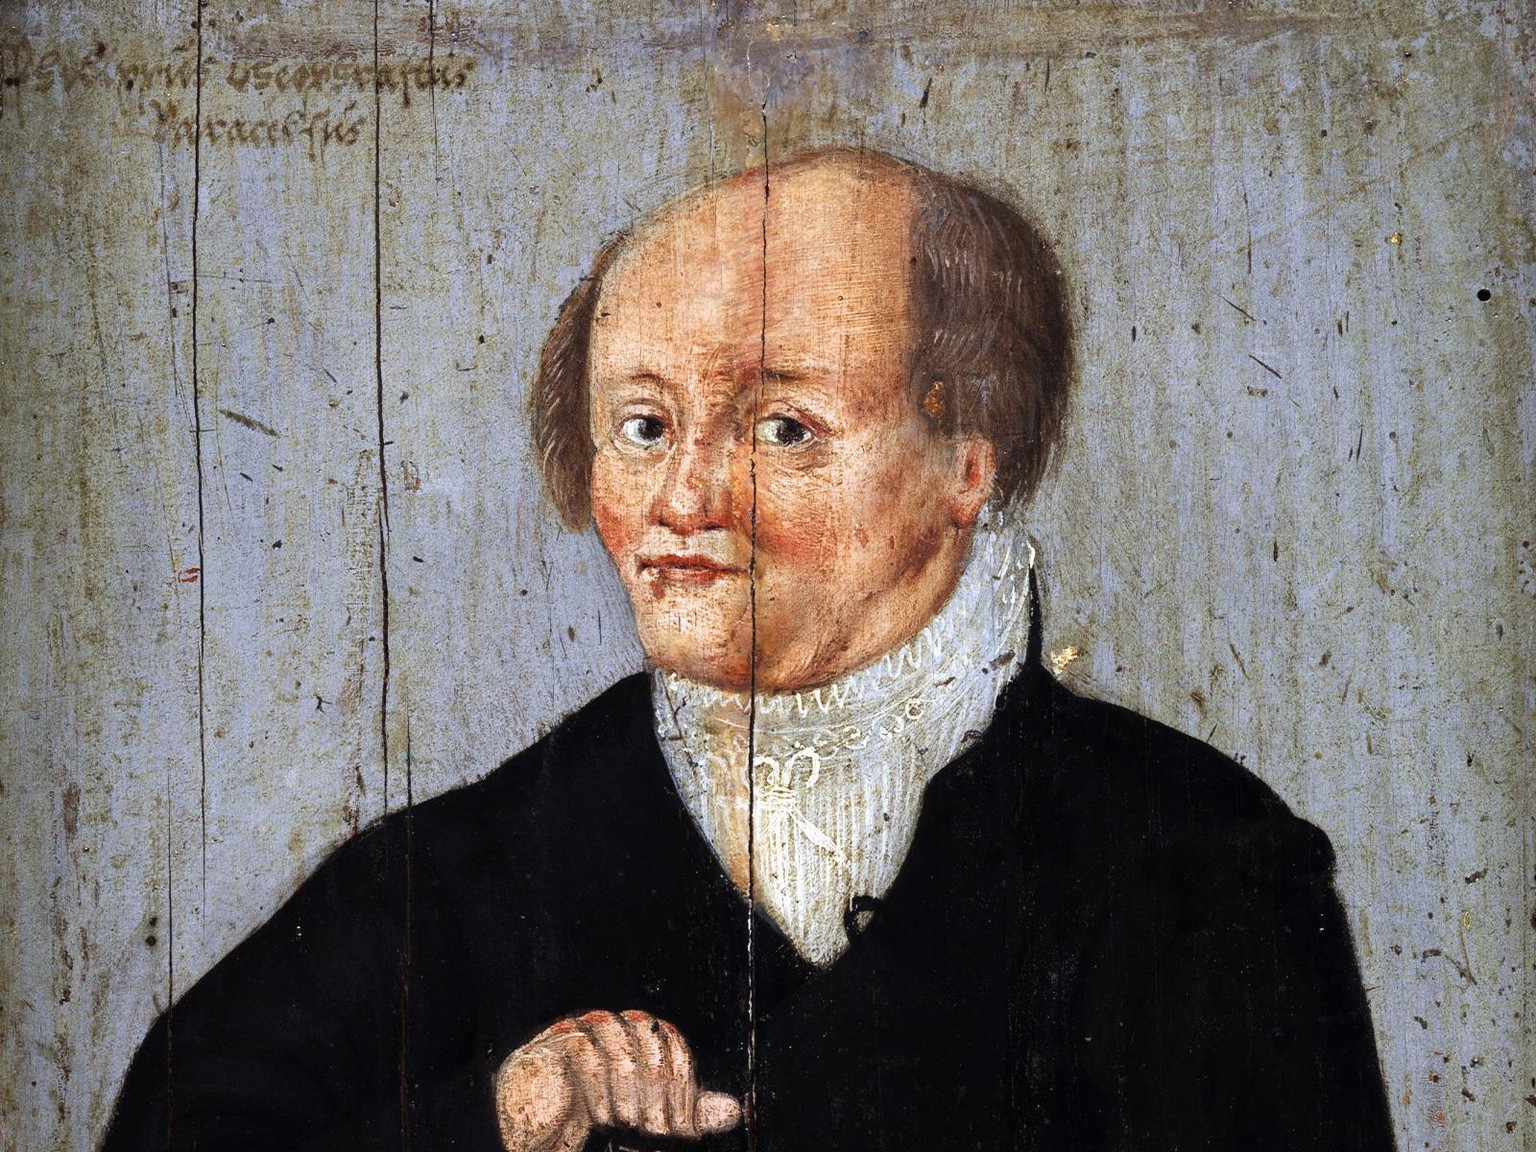 Portrait von Paracelsus von Augustin Hirschvogel, 1540 (Aussschnitt)
Gesamtansicht: https://blog.nationalmuseum.ch/app/uploads/philippus_theophrastus_paracelsus-hirschvogel_komplett.jpg
https://common ...